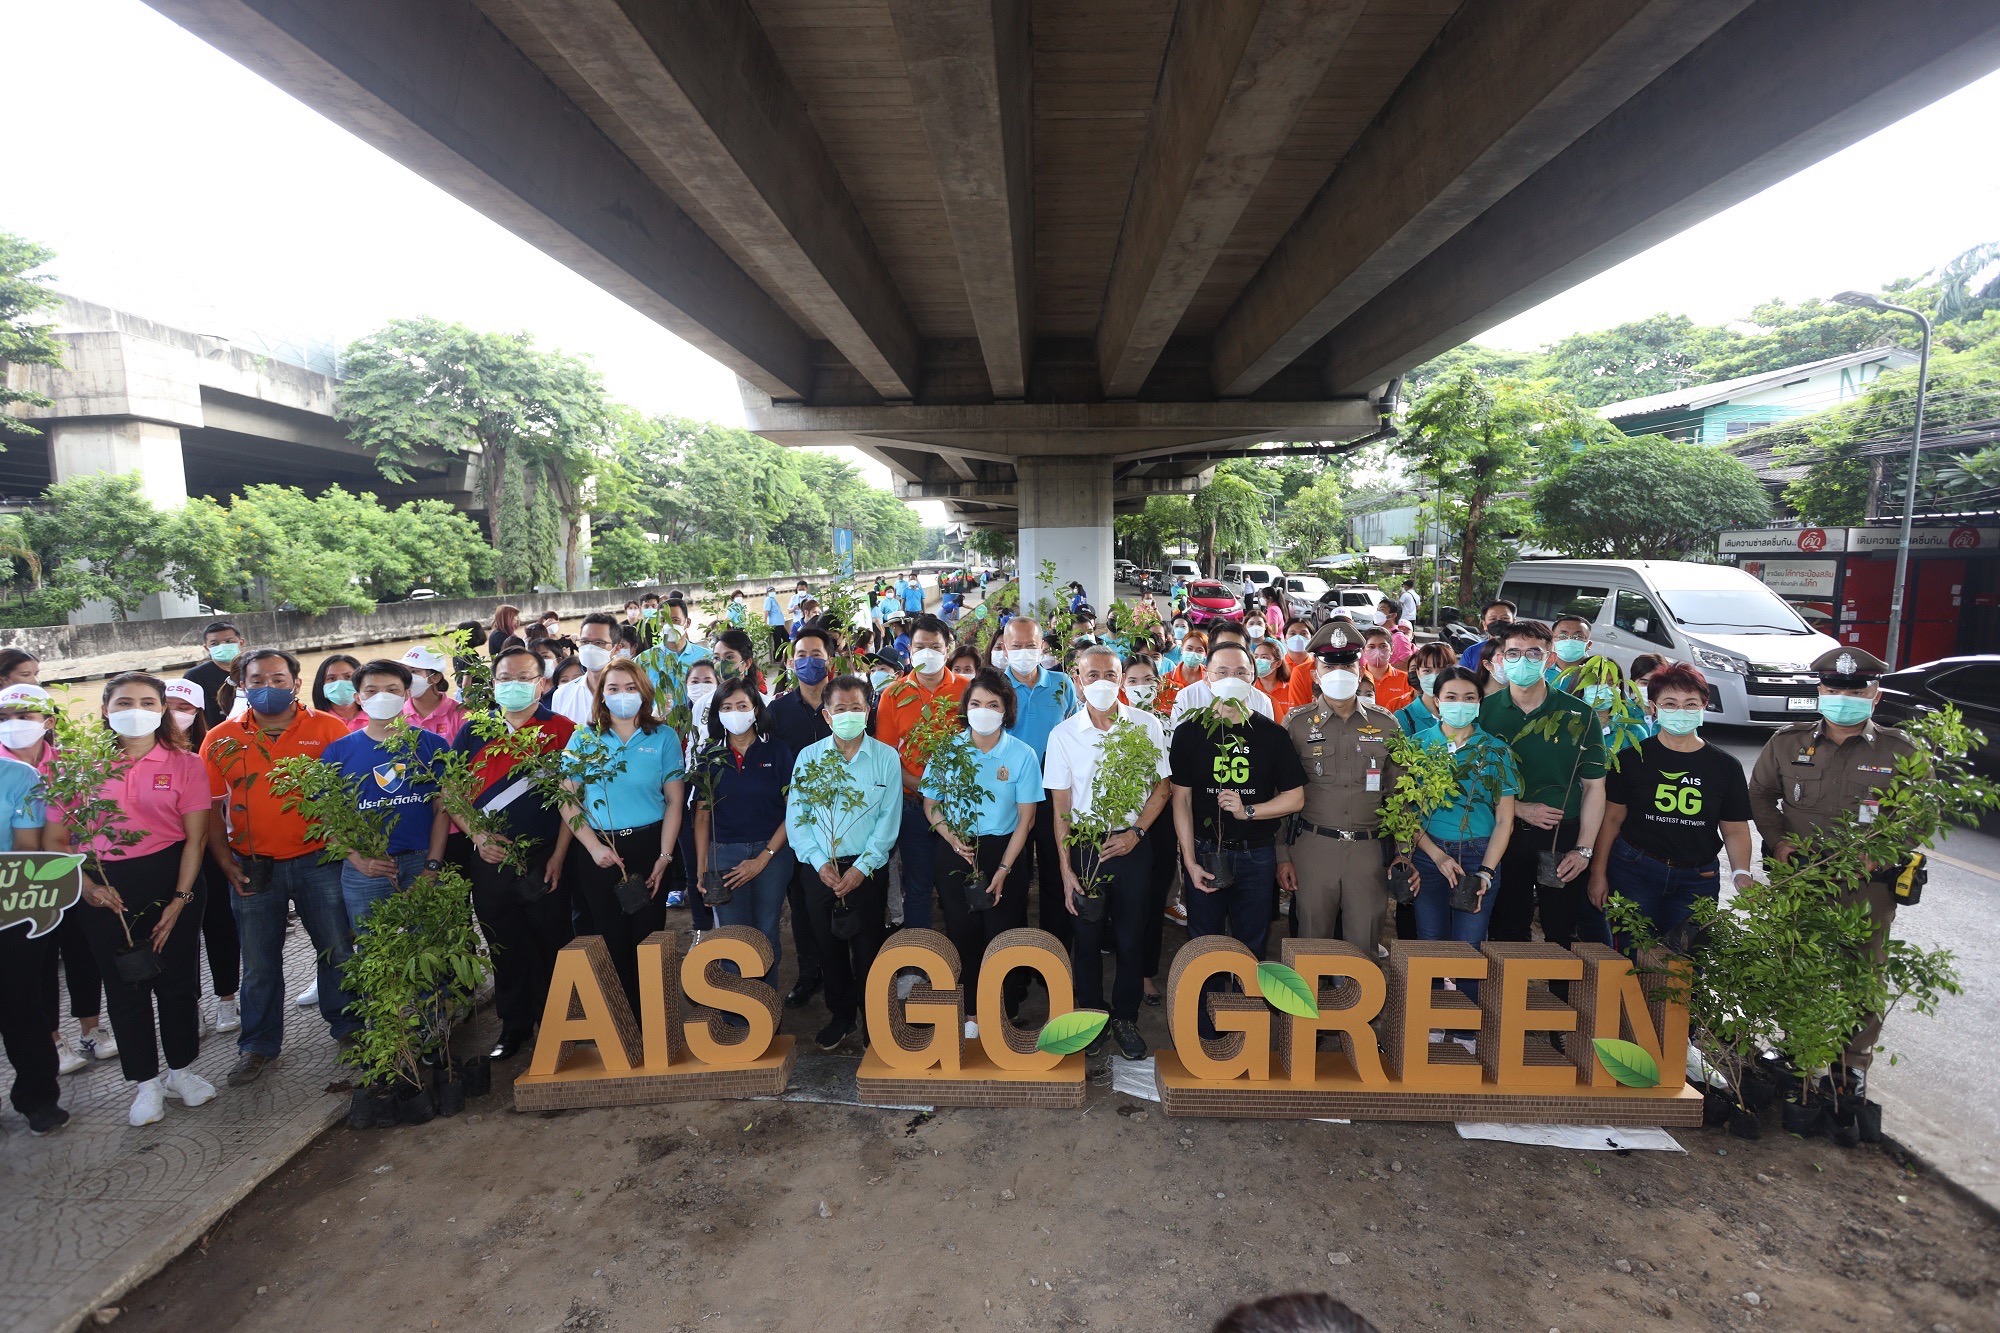 AIS Go Green รวมพลัง 17 พันธมิตรกลุ่มกรีนพหลโยธิน และเขตพญาไท เดินหน้าสร้างพื้นที่สีเขียวทั่วกทม.ต่อเนื่อง เป้าหมายปลูกต้นไม้ 100,000 ต้น